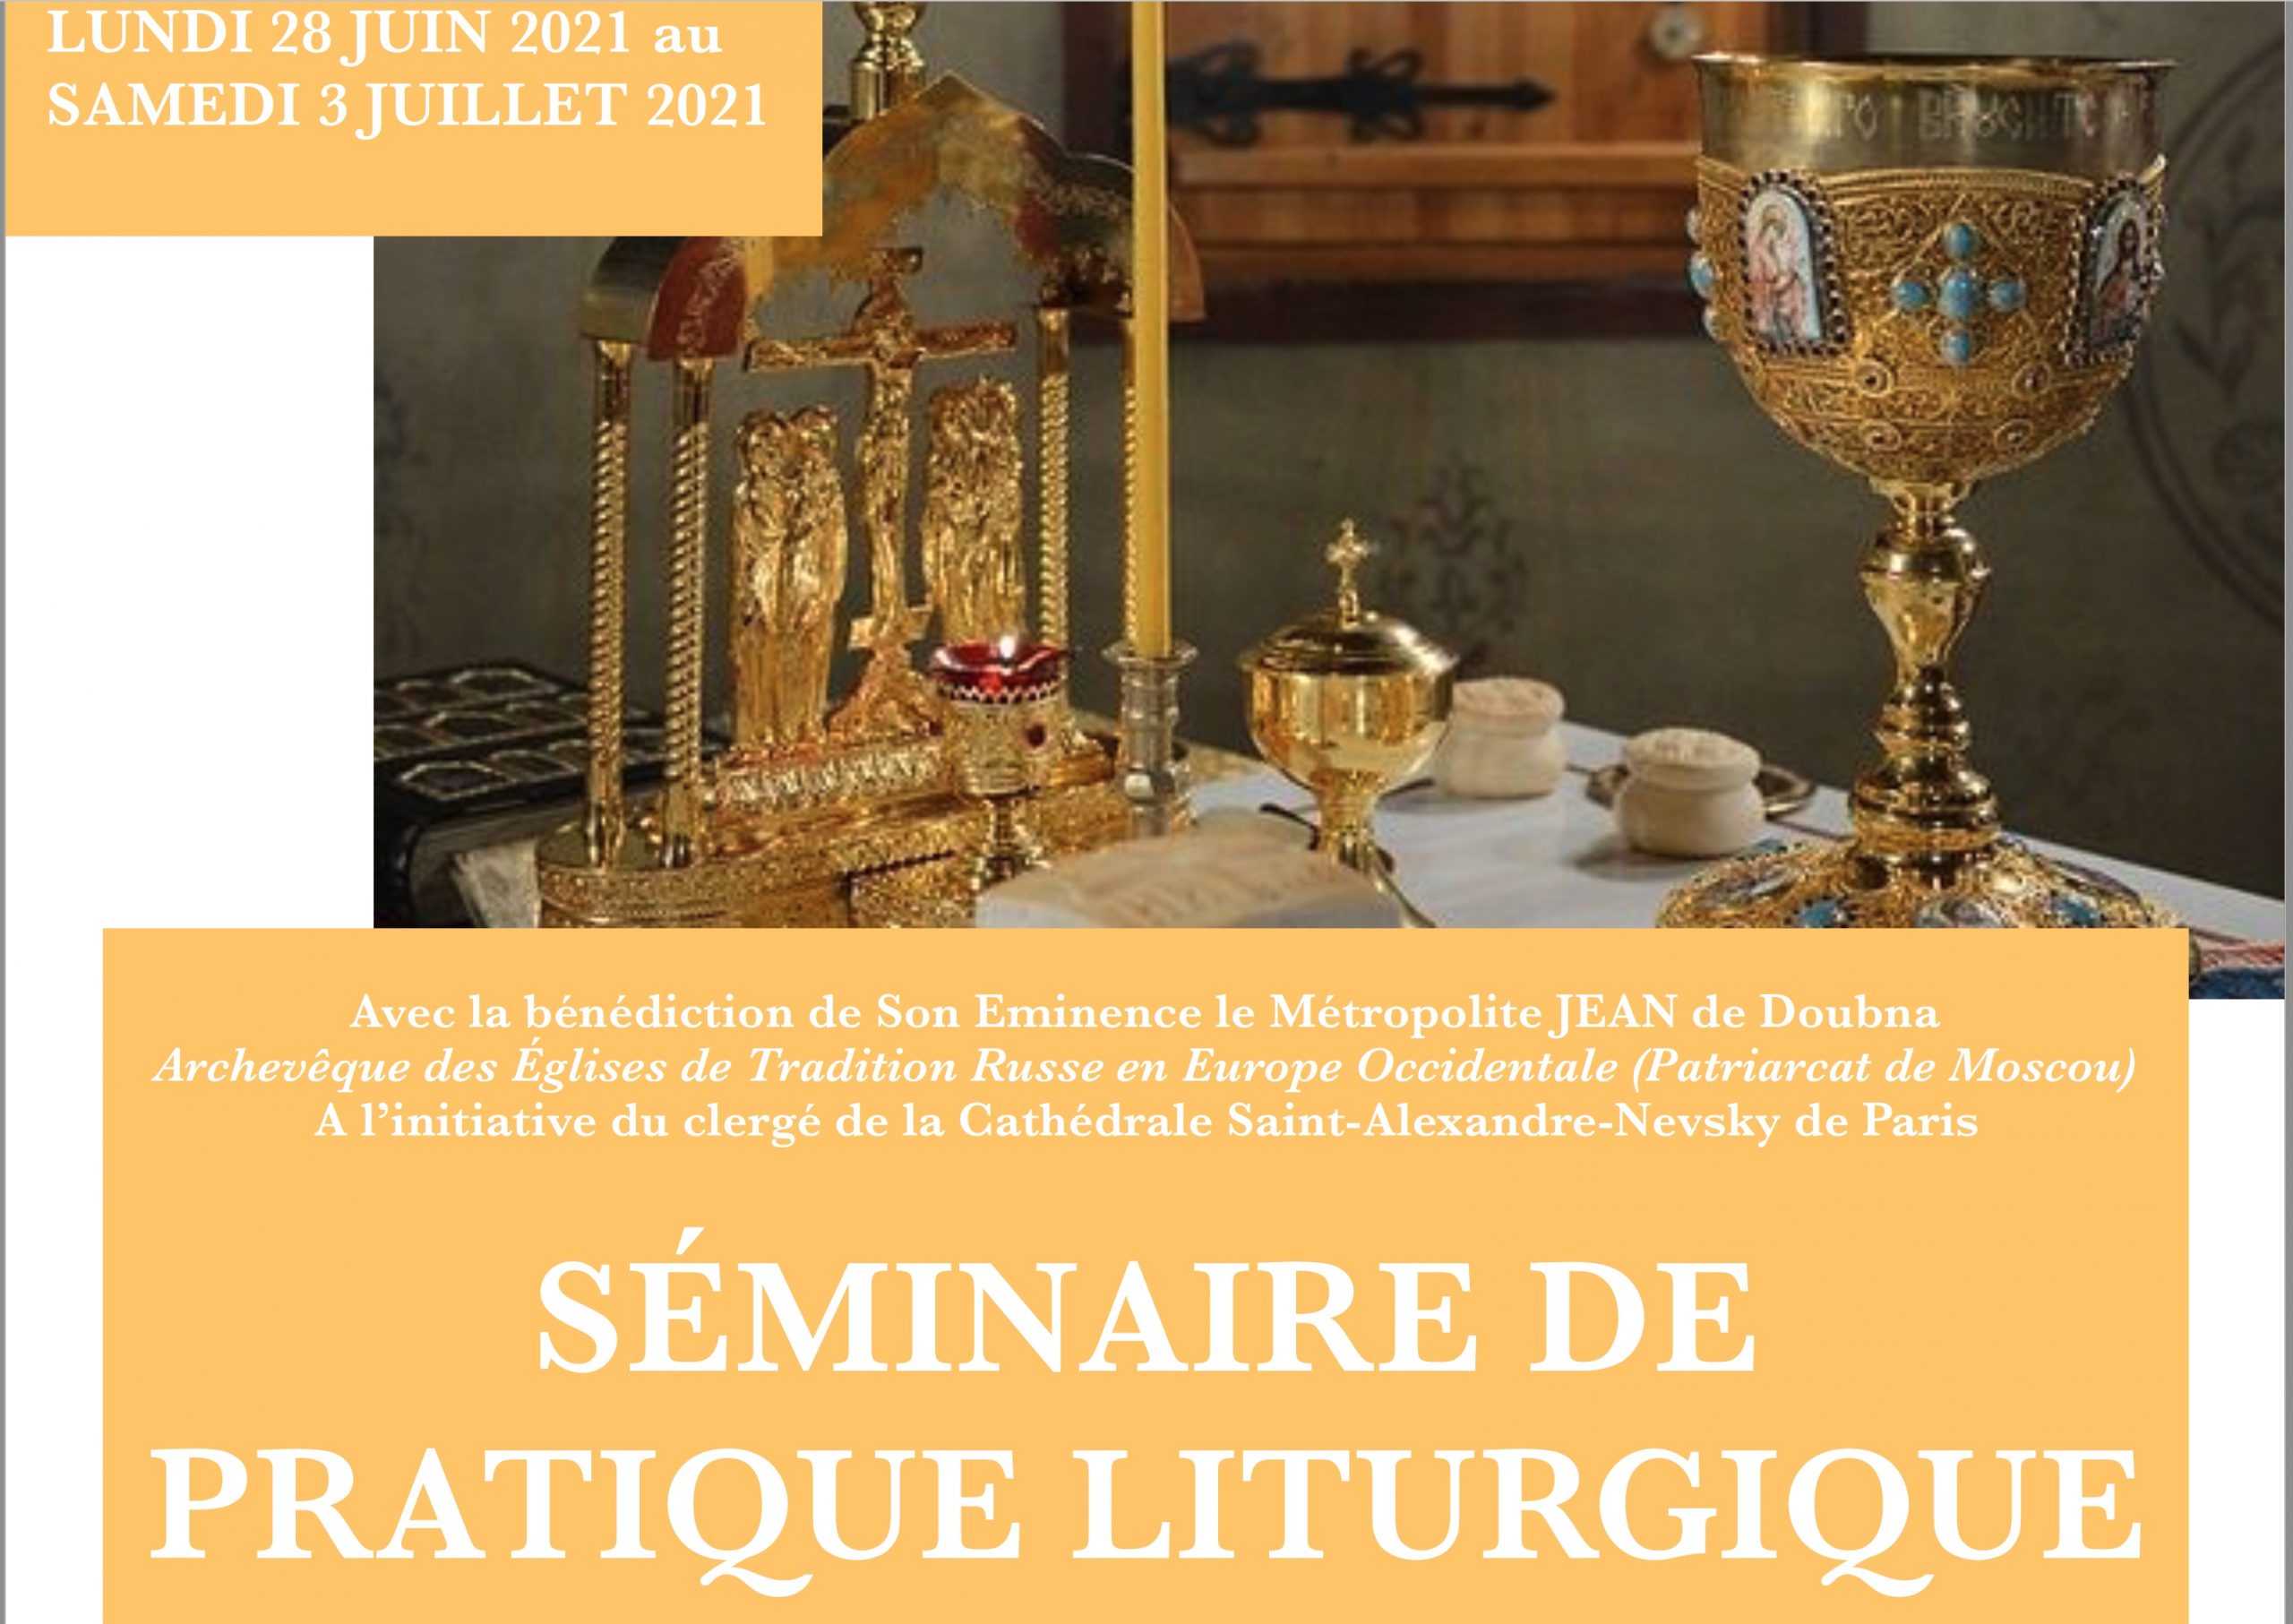 Un séminaire de pratique liturgique est organisé à la Colline Saint-Serge du 28 juin au 3 juillet 2021